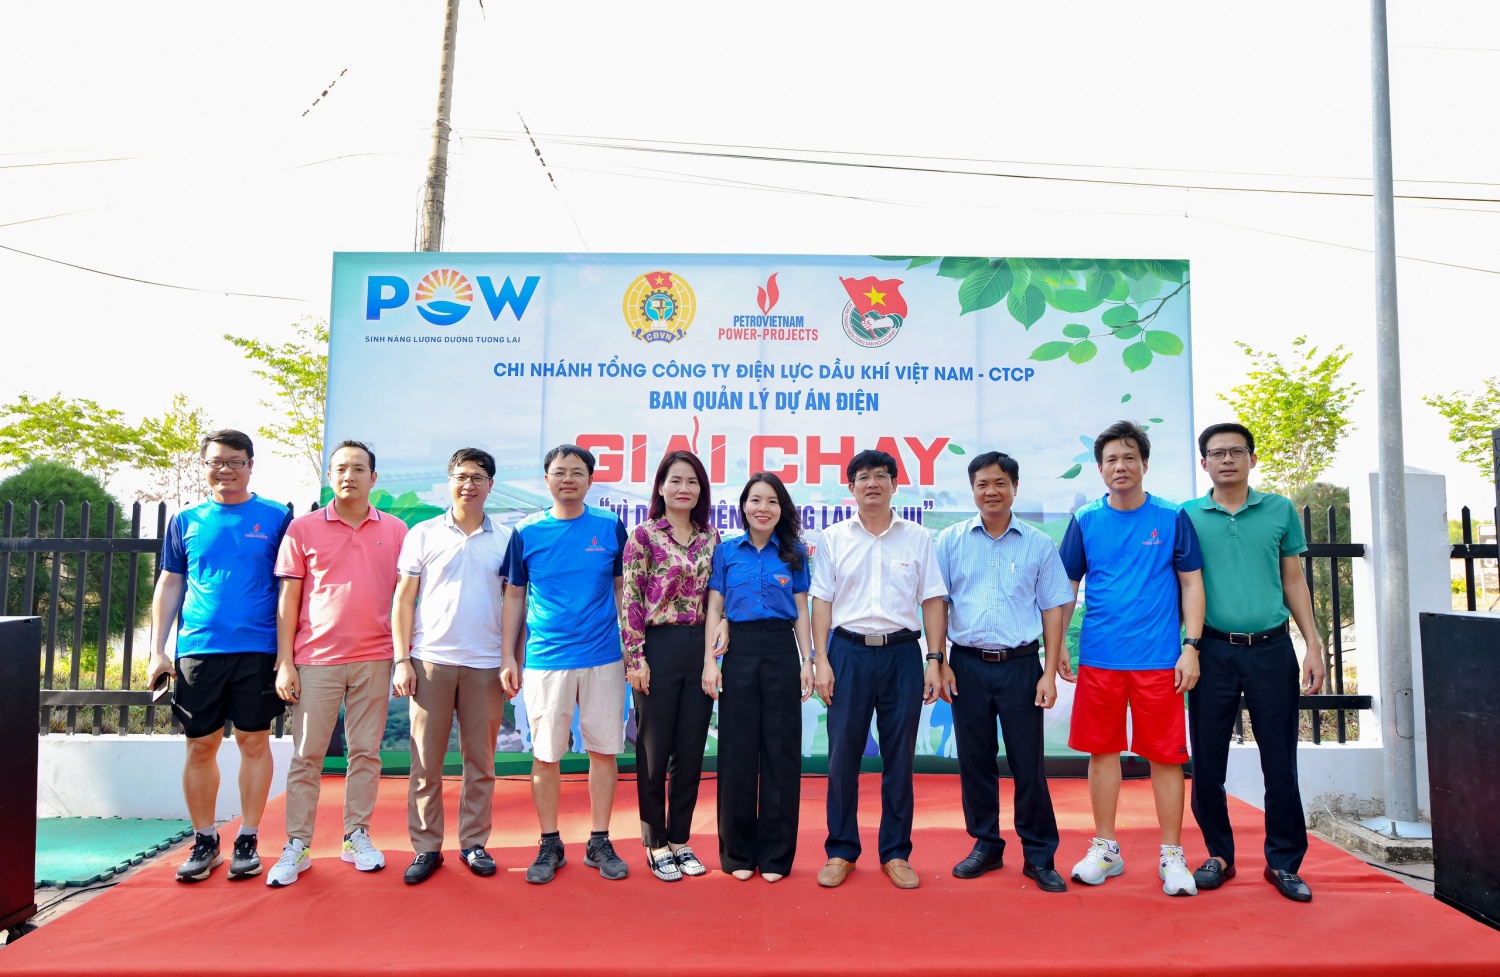 PV Power Project tổ chức thành công Giải chạy “Vì dòng điện tương lai”